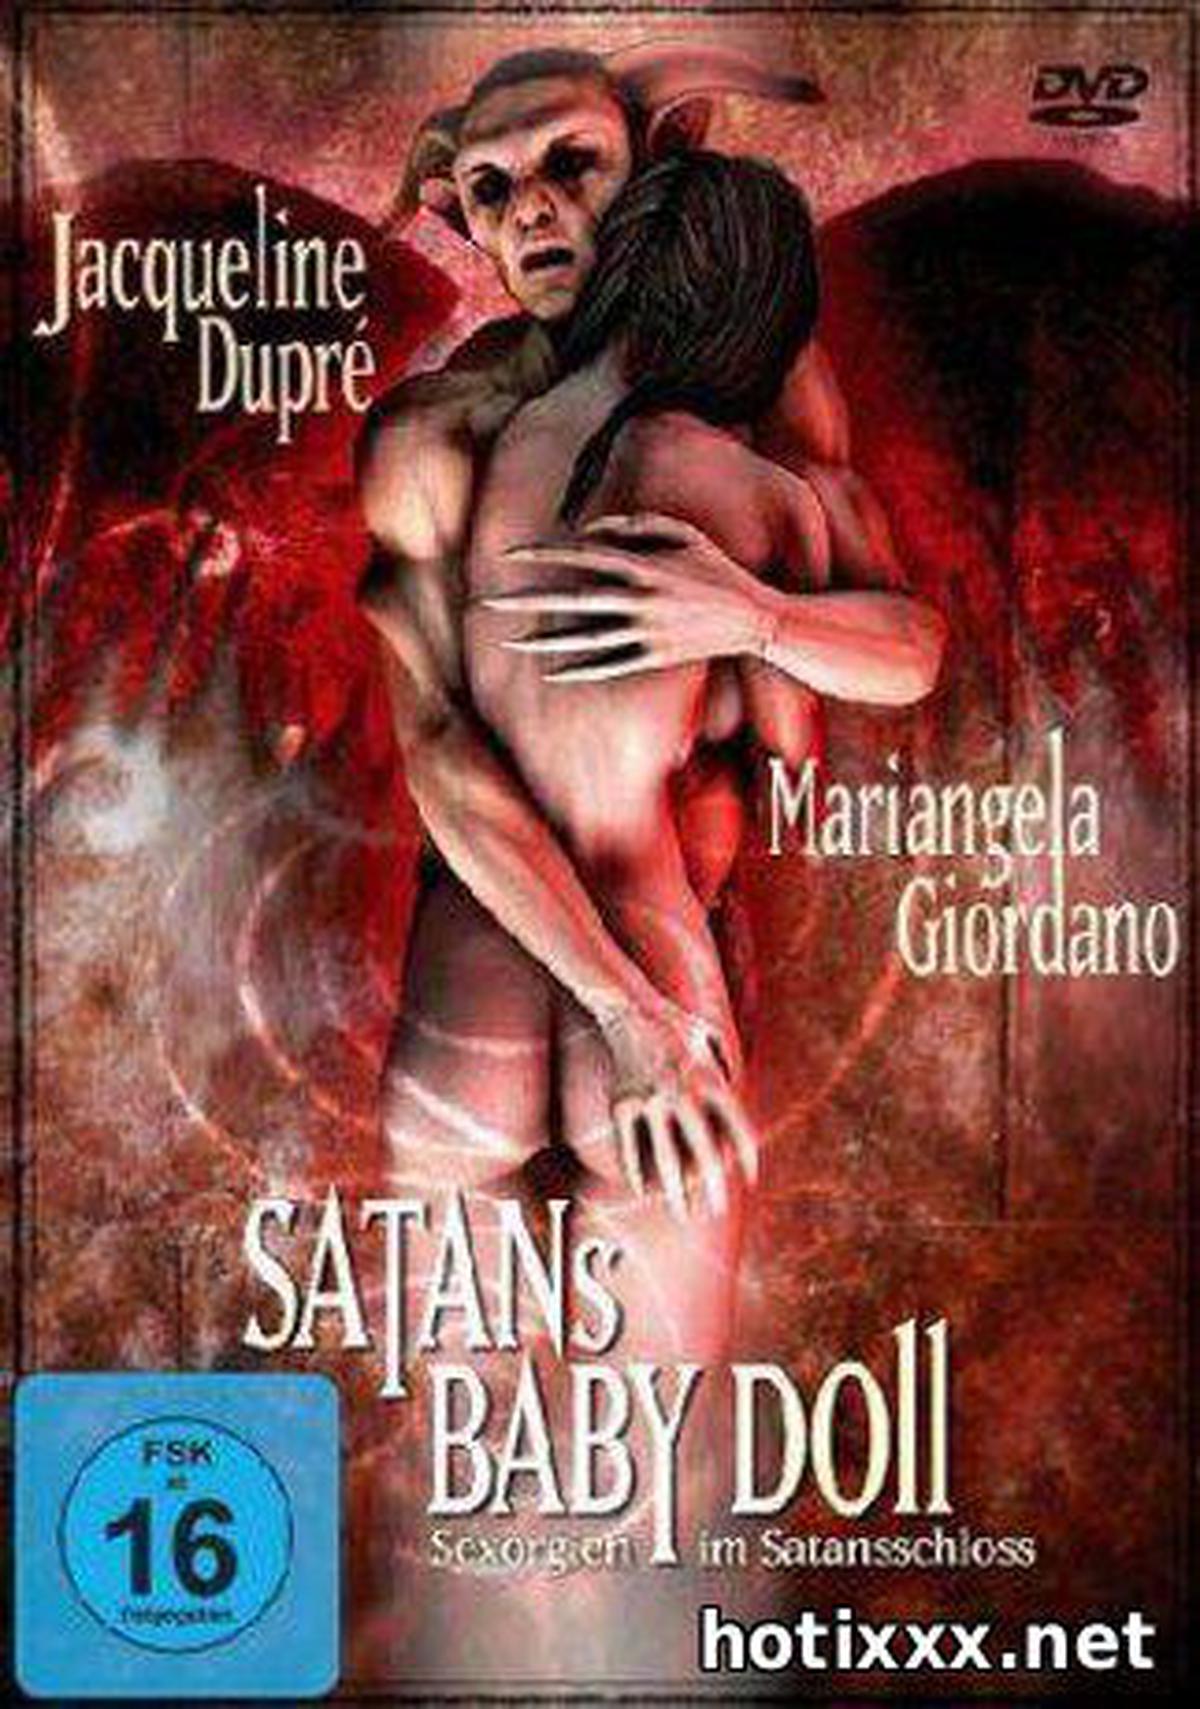 La Bimba di Satana / Satan's Baby Doll / A Girl for Satan / Dr. Porno und sein Satanszombie / а атаны (1982) [X-Rated Longer Version]